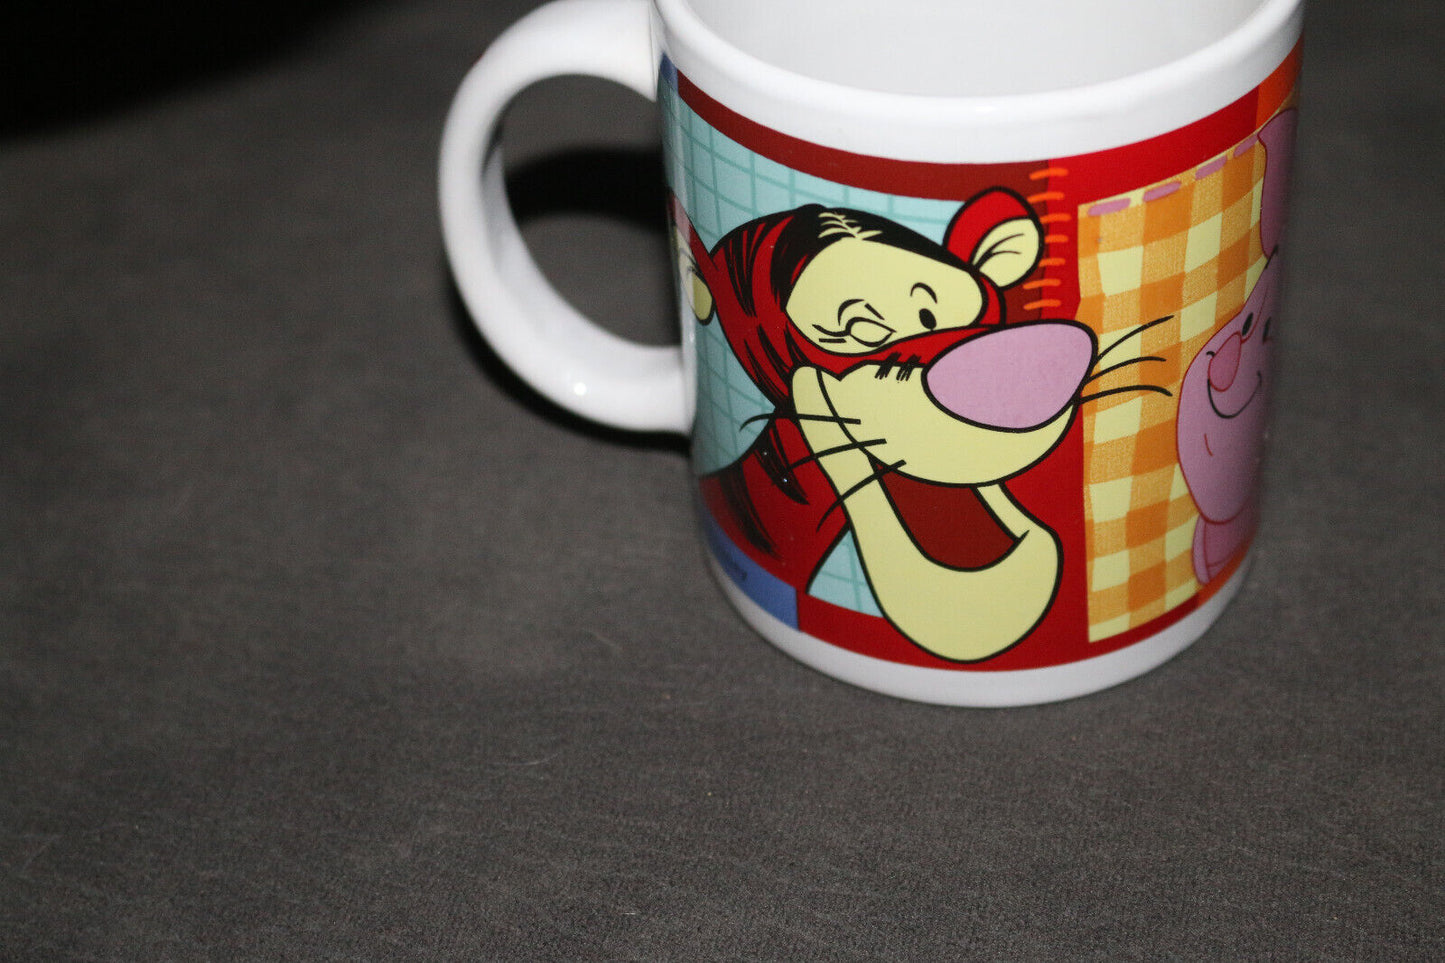 Tasse À Café Ceramic Winnie The Pooh Coffee Cup Mug Cute Piggly Rare Collectible